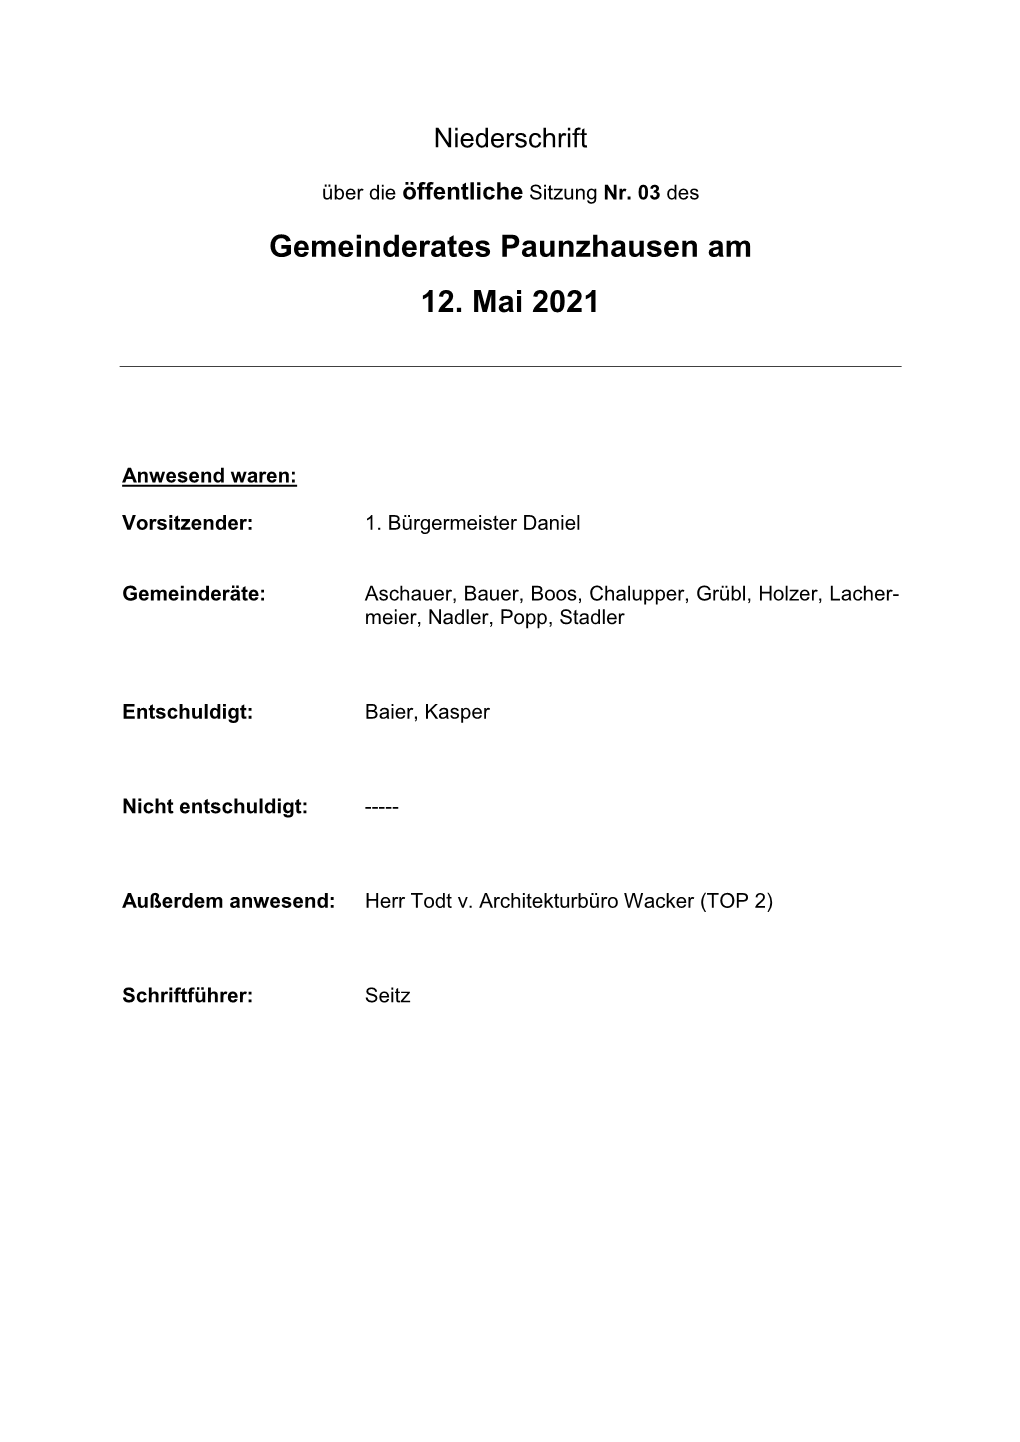 Gemeinderates Paunzhausen Am 12. Mai 2021